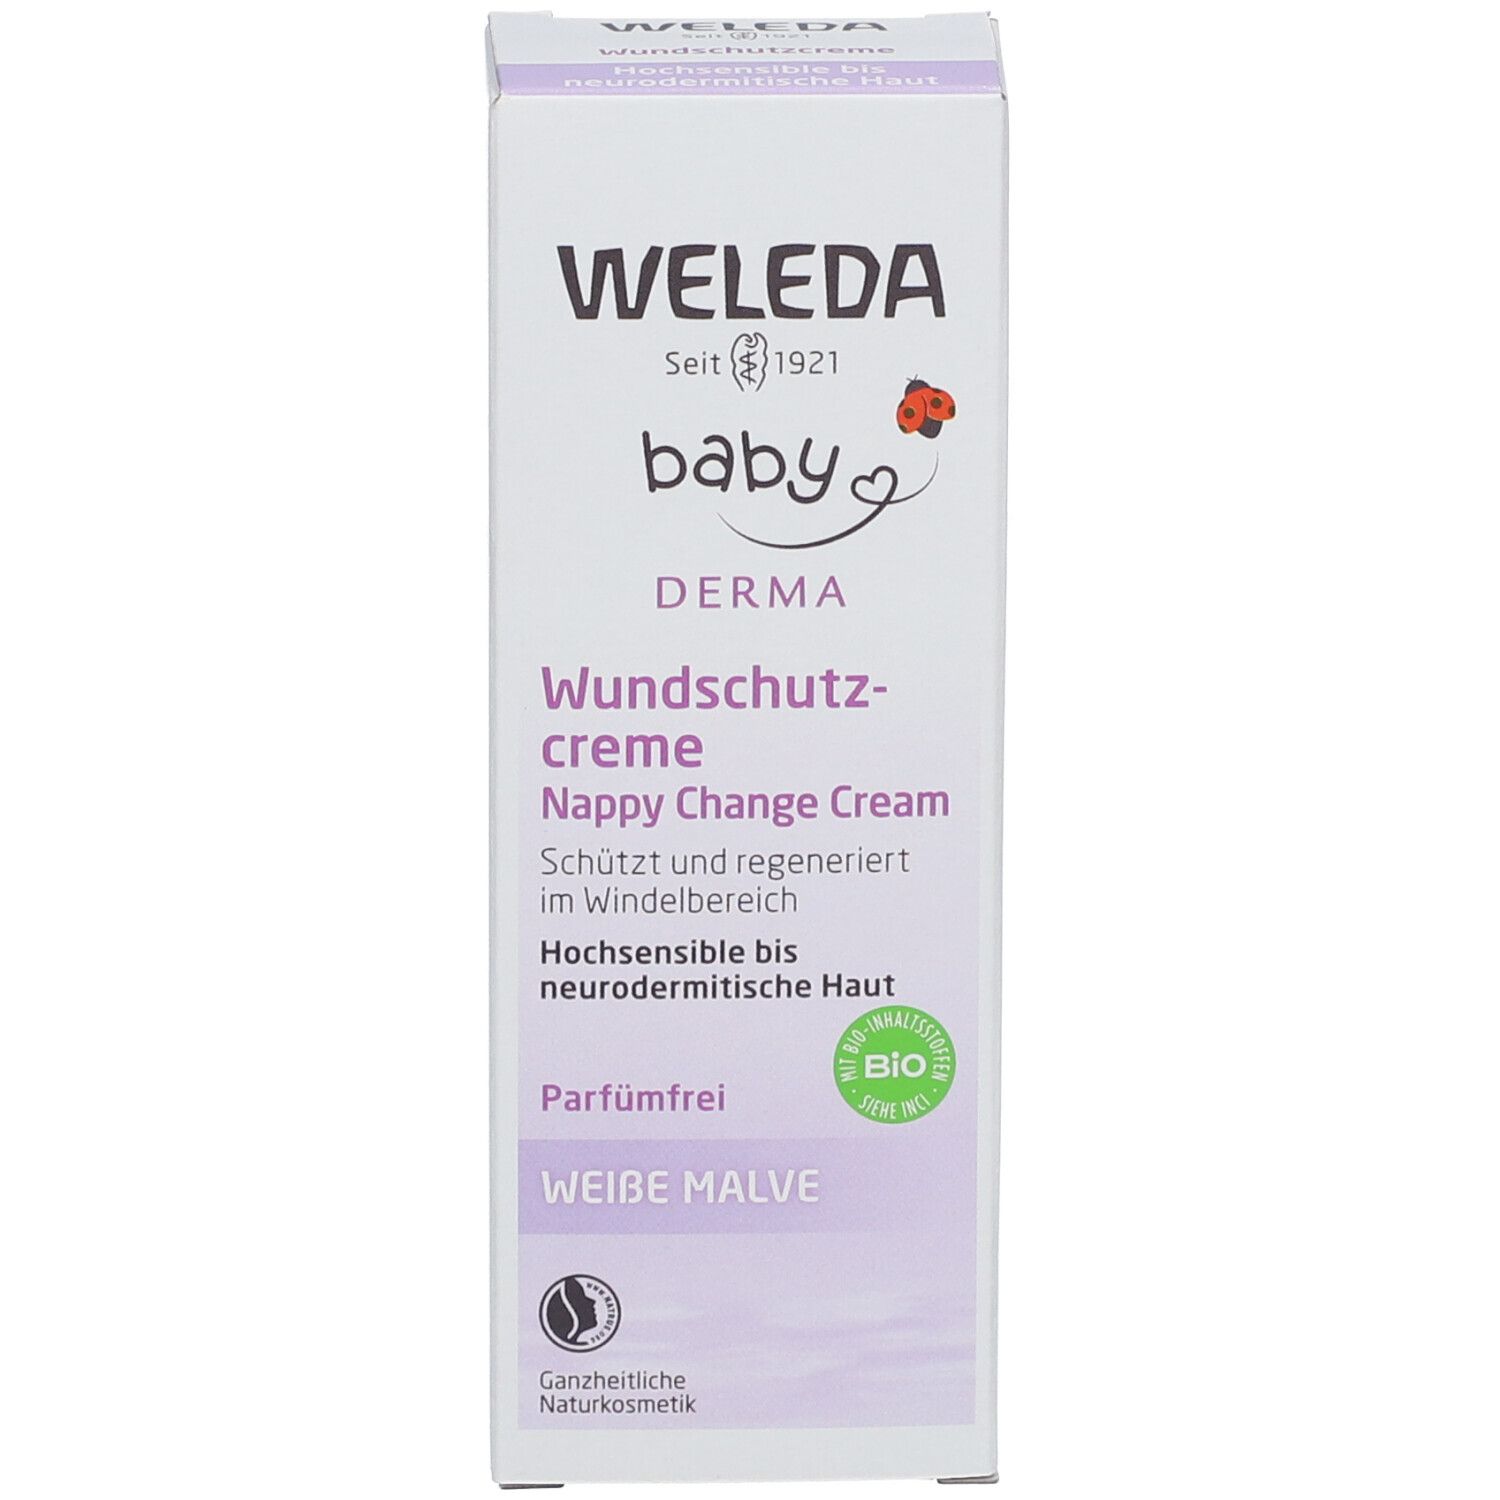 Weleda Baby Wundschutzcreme Weiße Malve - parfümfreie Windelcreme, schützt, regeneriert & pflegt